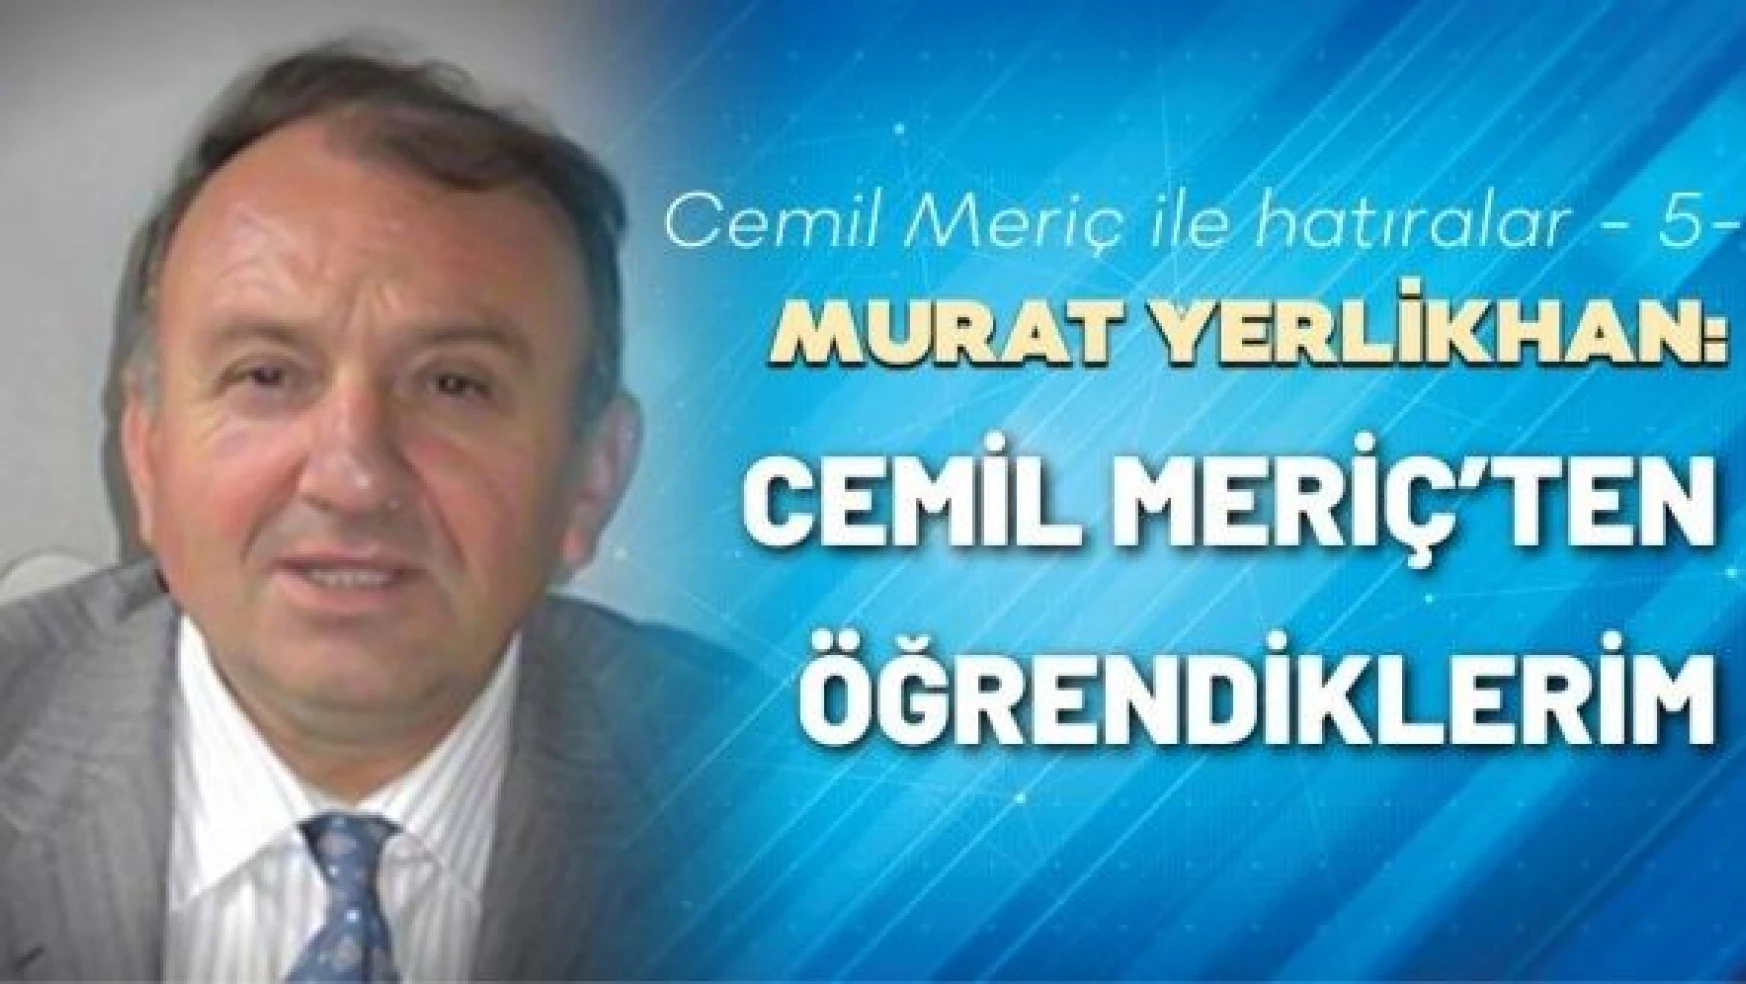 Murat Yerlikhan Cemil Meriç ile hatıralarını yazmaya devam ediyor